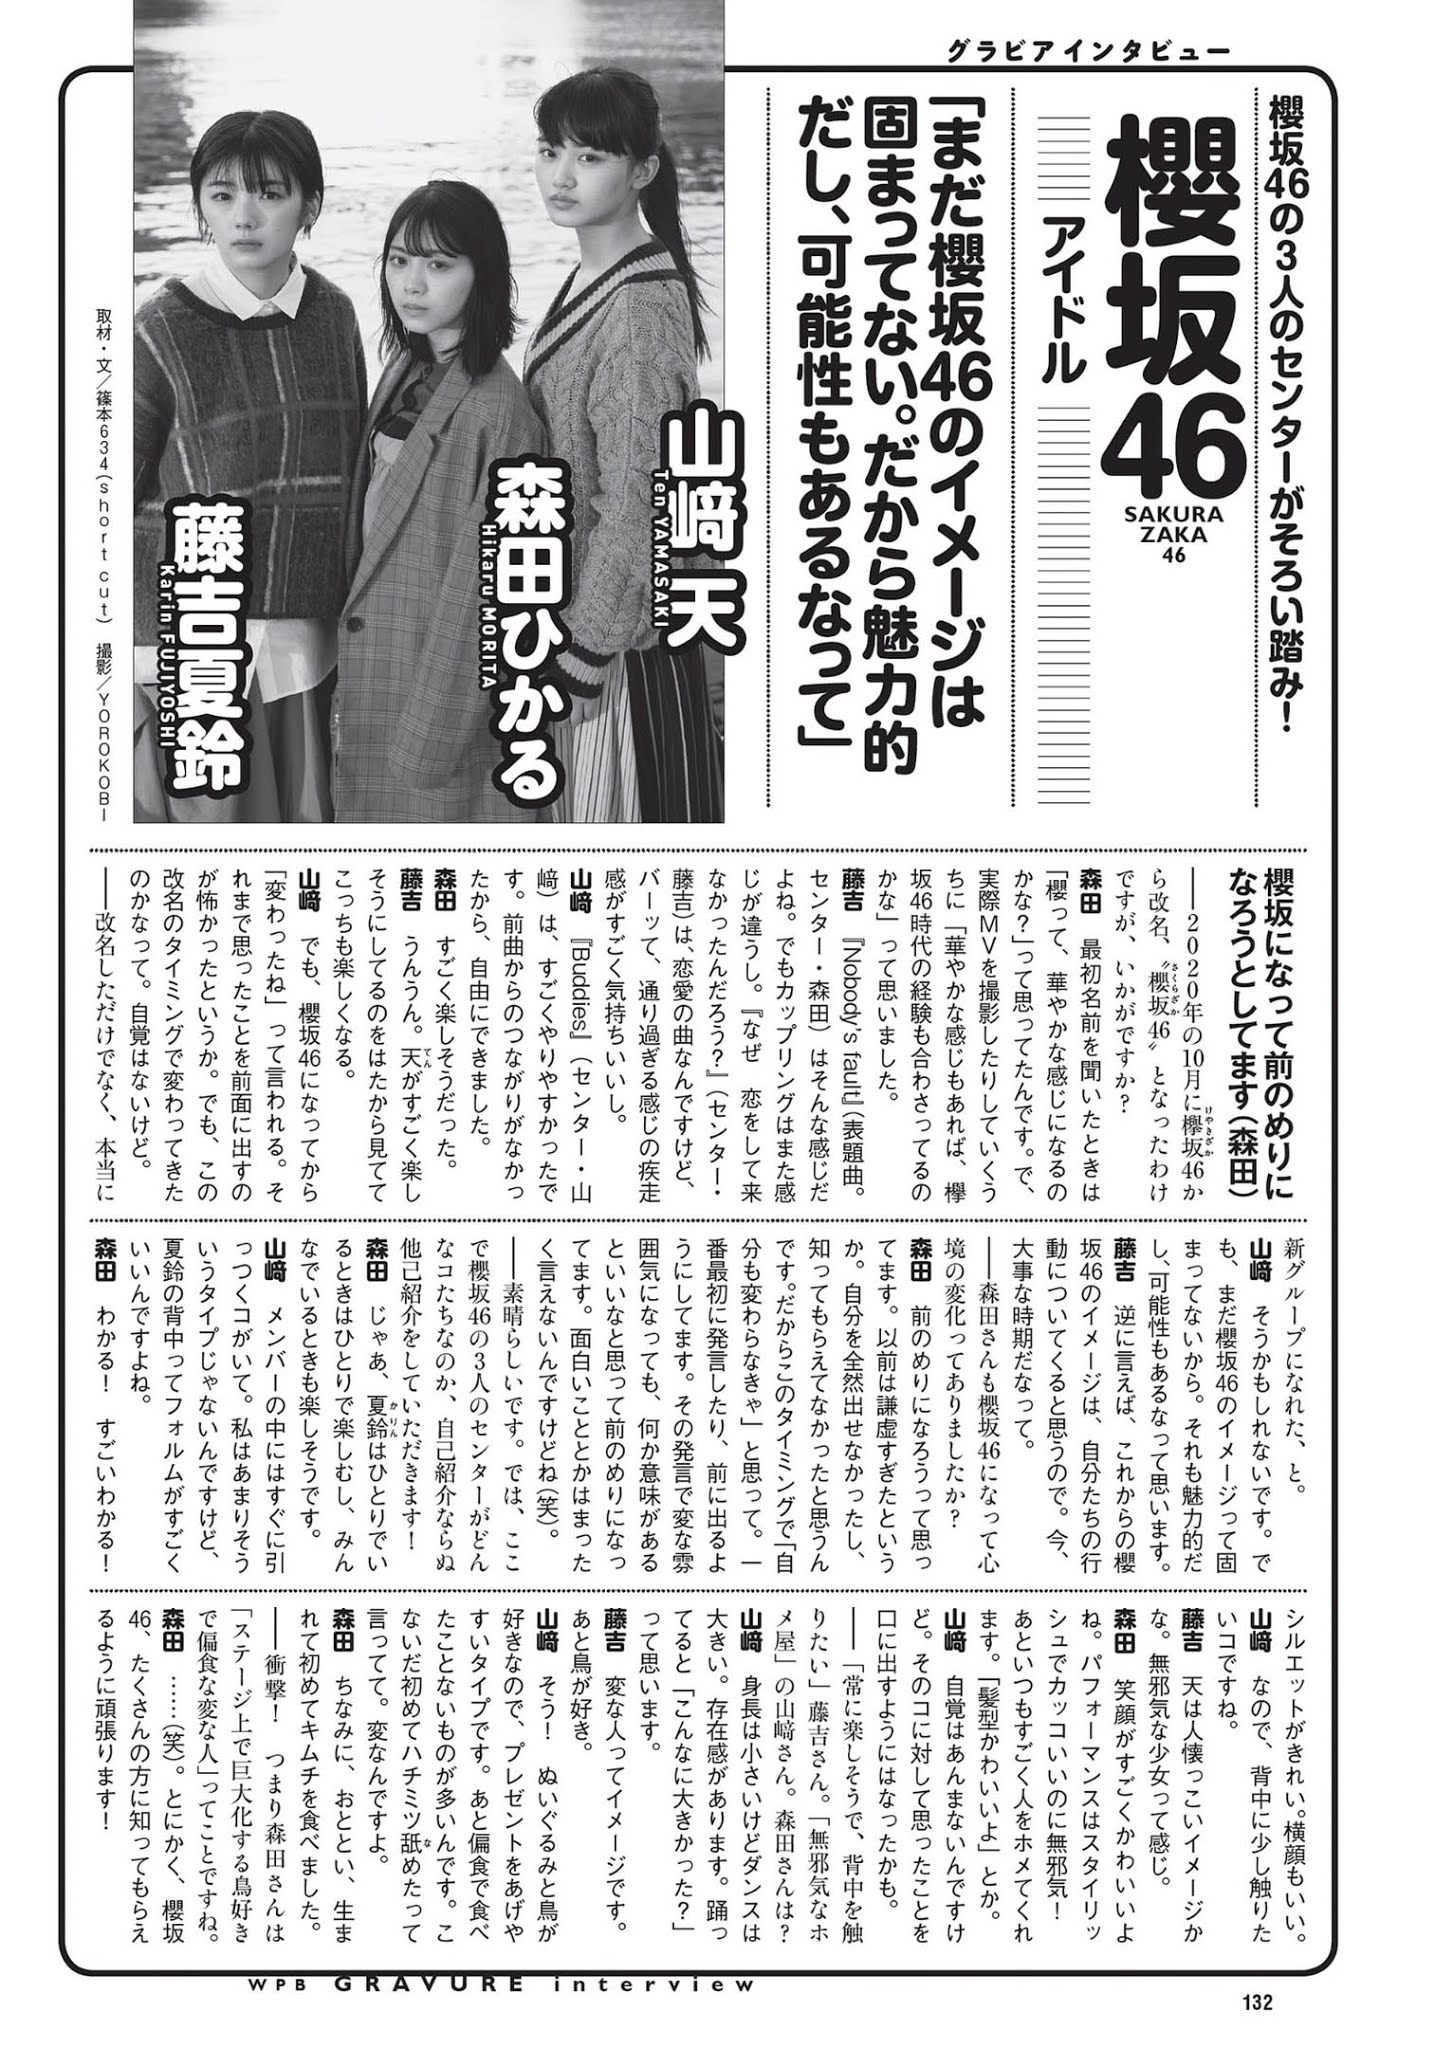 森田ひかる, 藤吉夏鈴, 山﨑天, Weekly Playboy 2021 No.03-04 (週刊プレイボーイ 2021年3-4号)